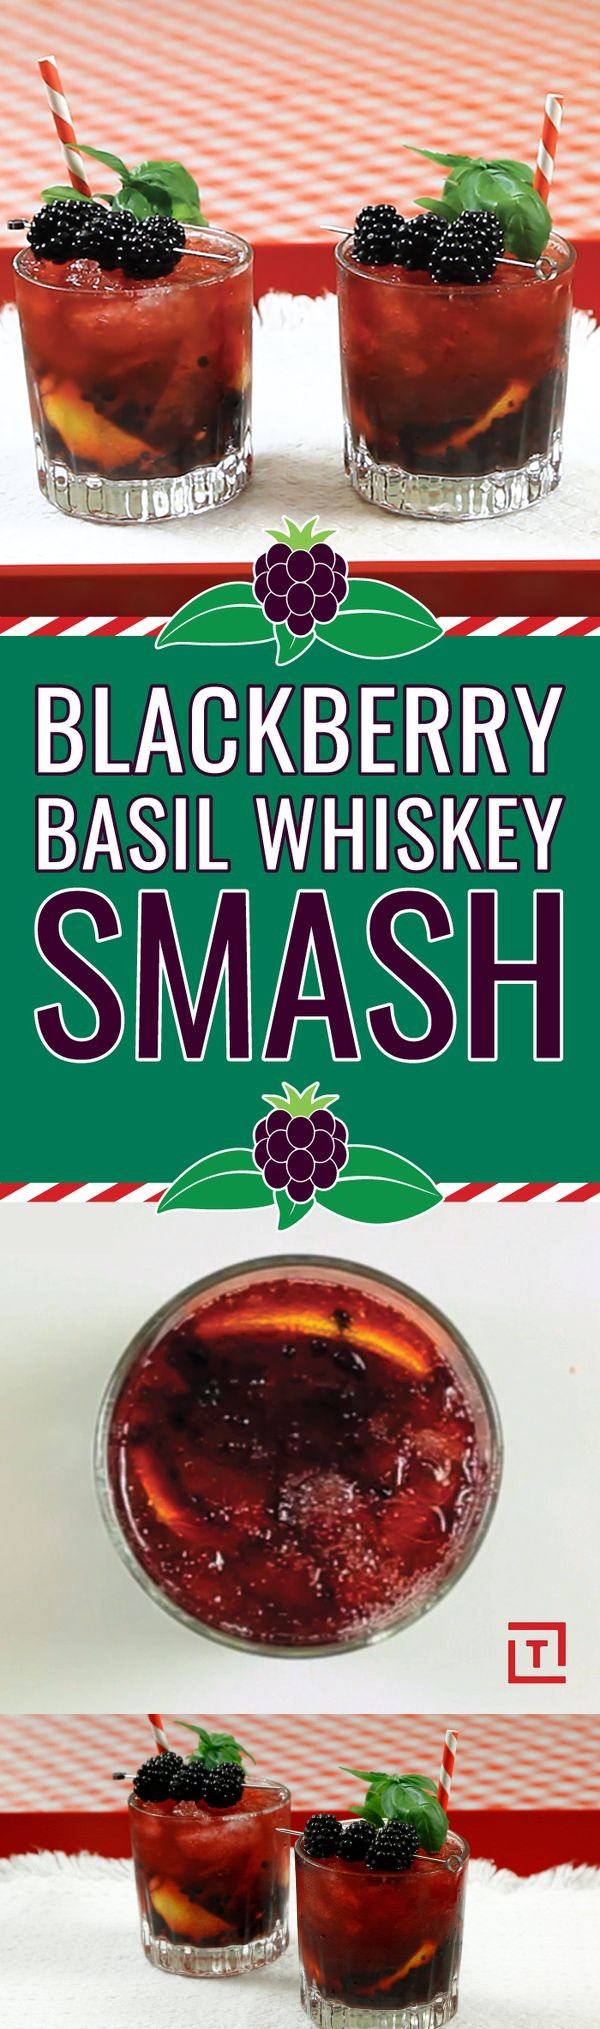 Blackberry Basil Whiskey